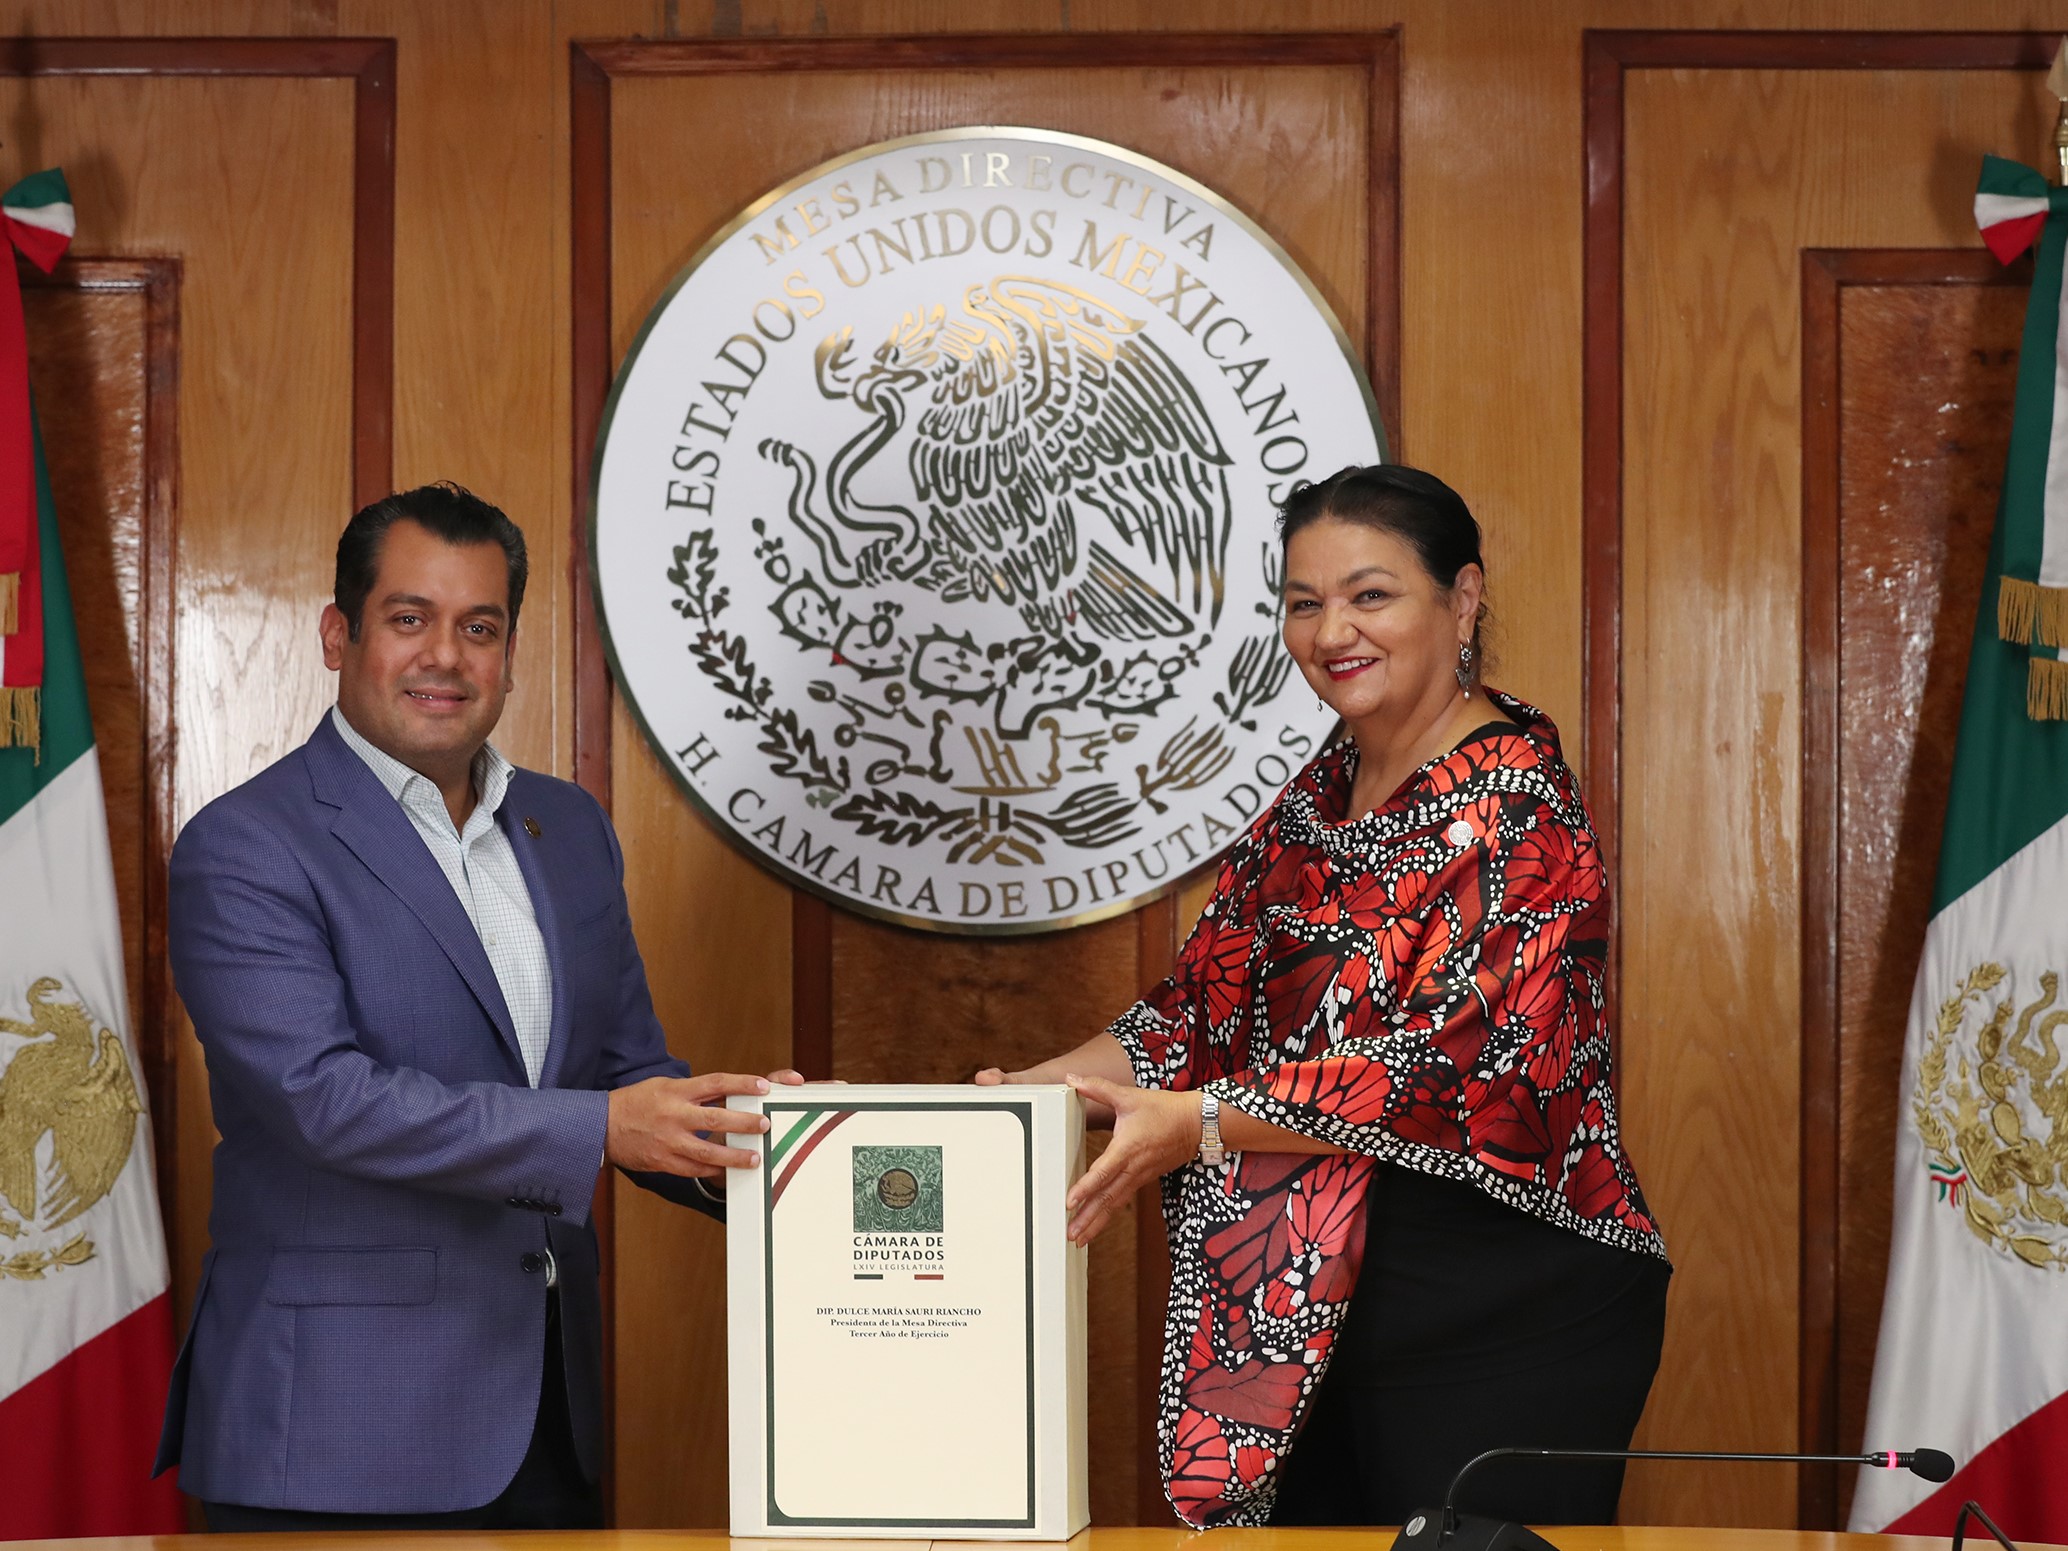 El diputado Sergio Gutiérrez Luna recibe la Mesa Directiva por parte de la diputada Dulce María Sauri Riancho